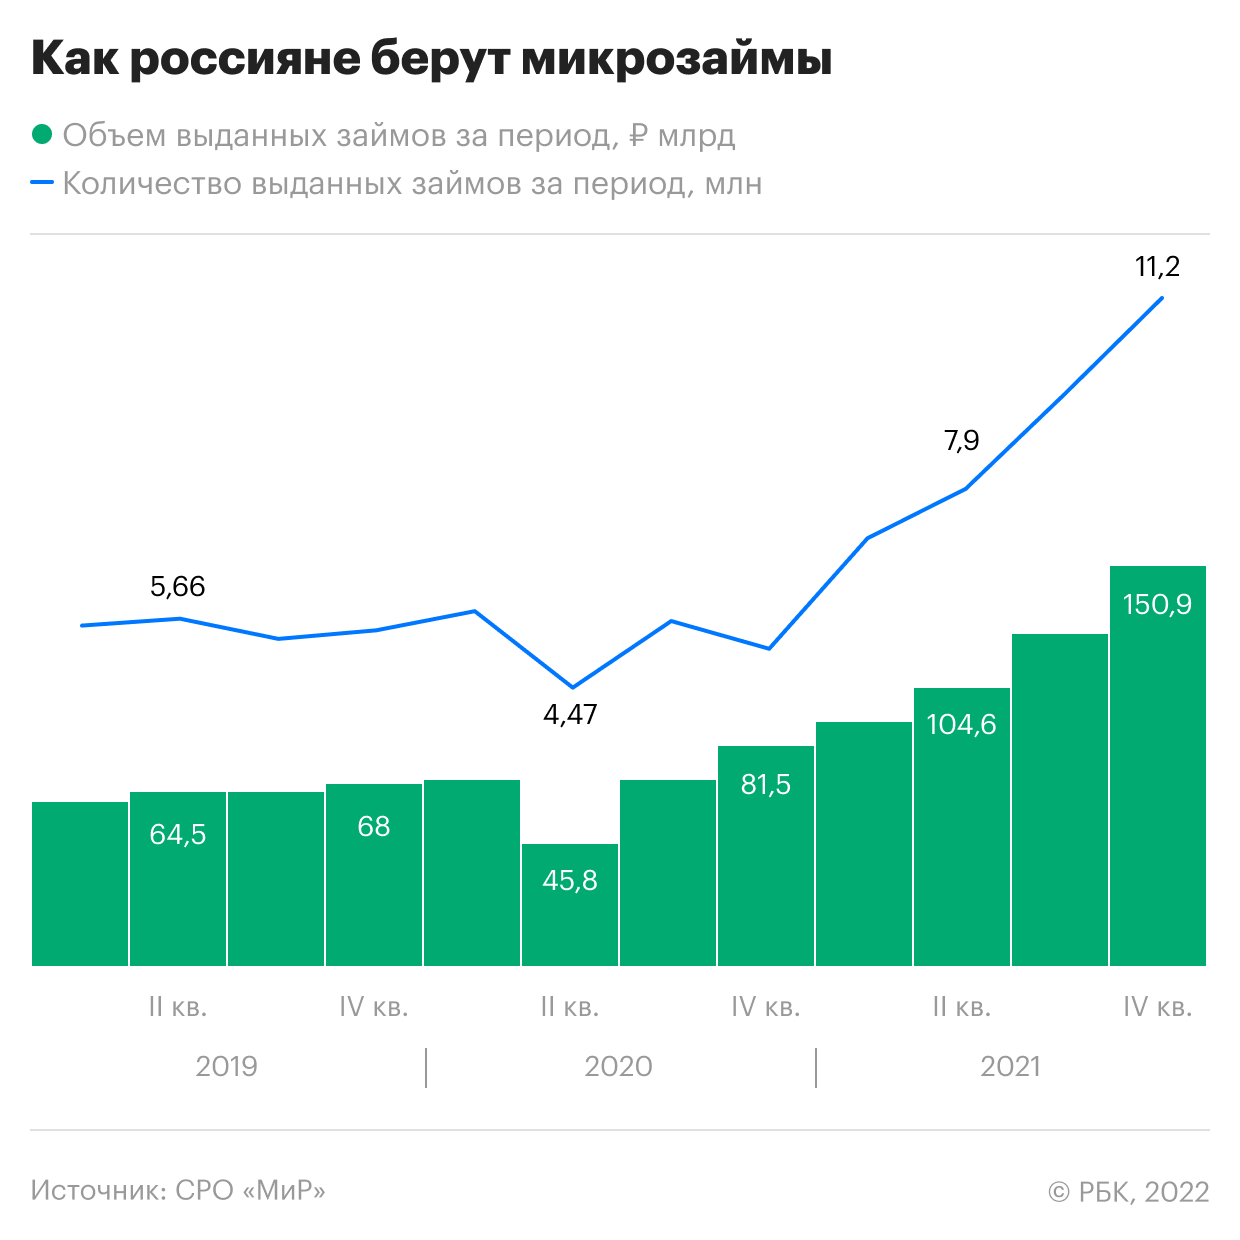 В конце года россияне взяли микрозаймы на рекордные ₽150 млрд